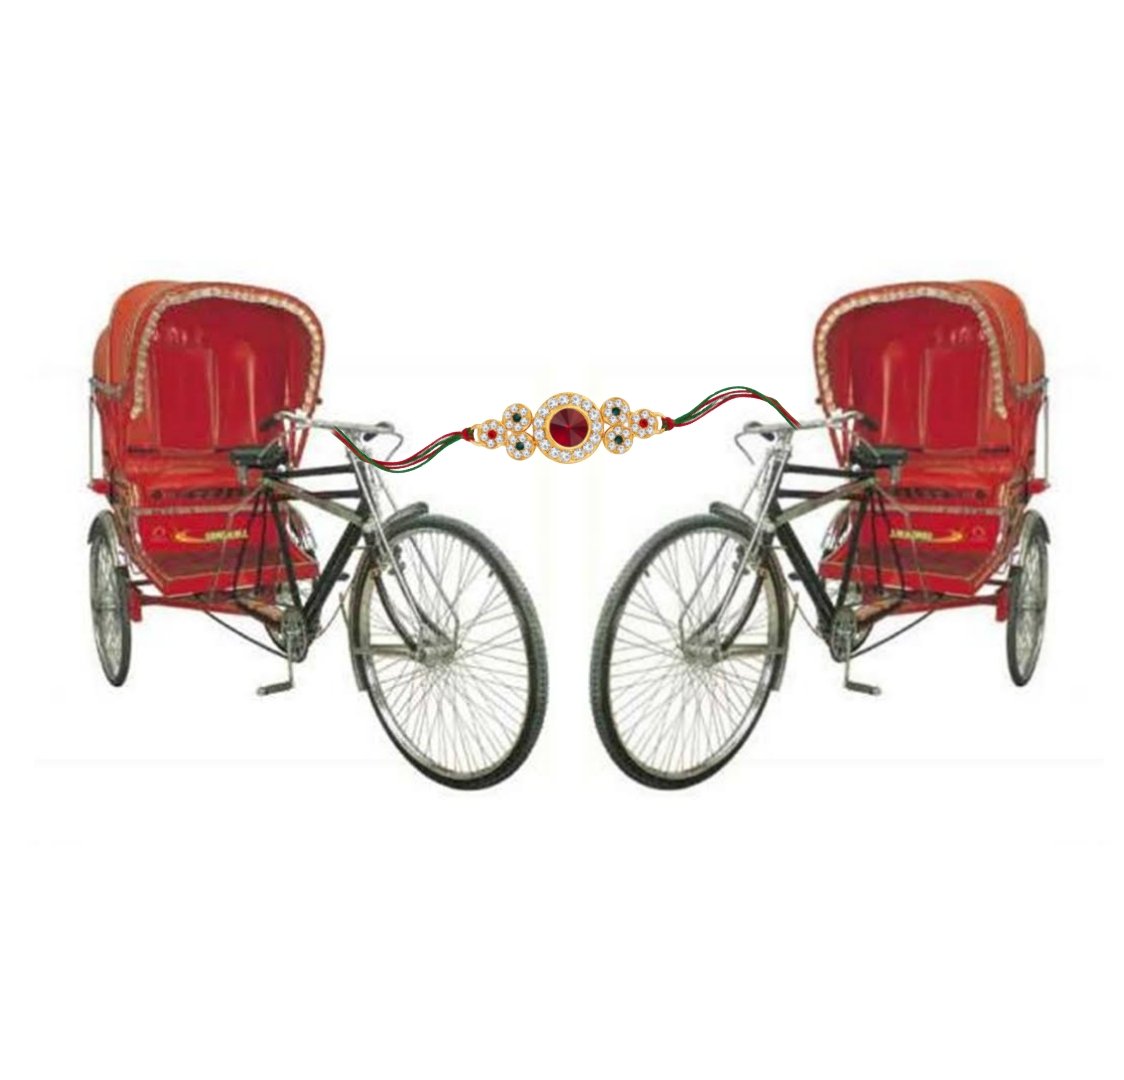 Rickshaw Bandhan